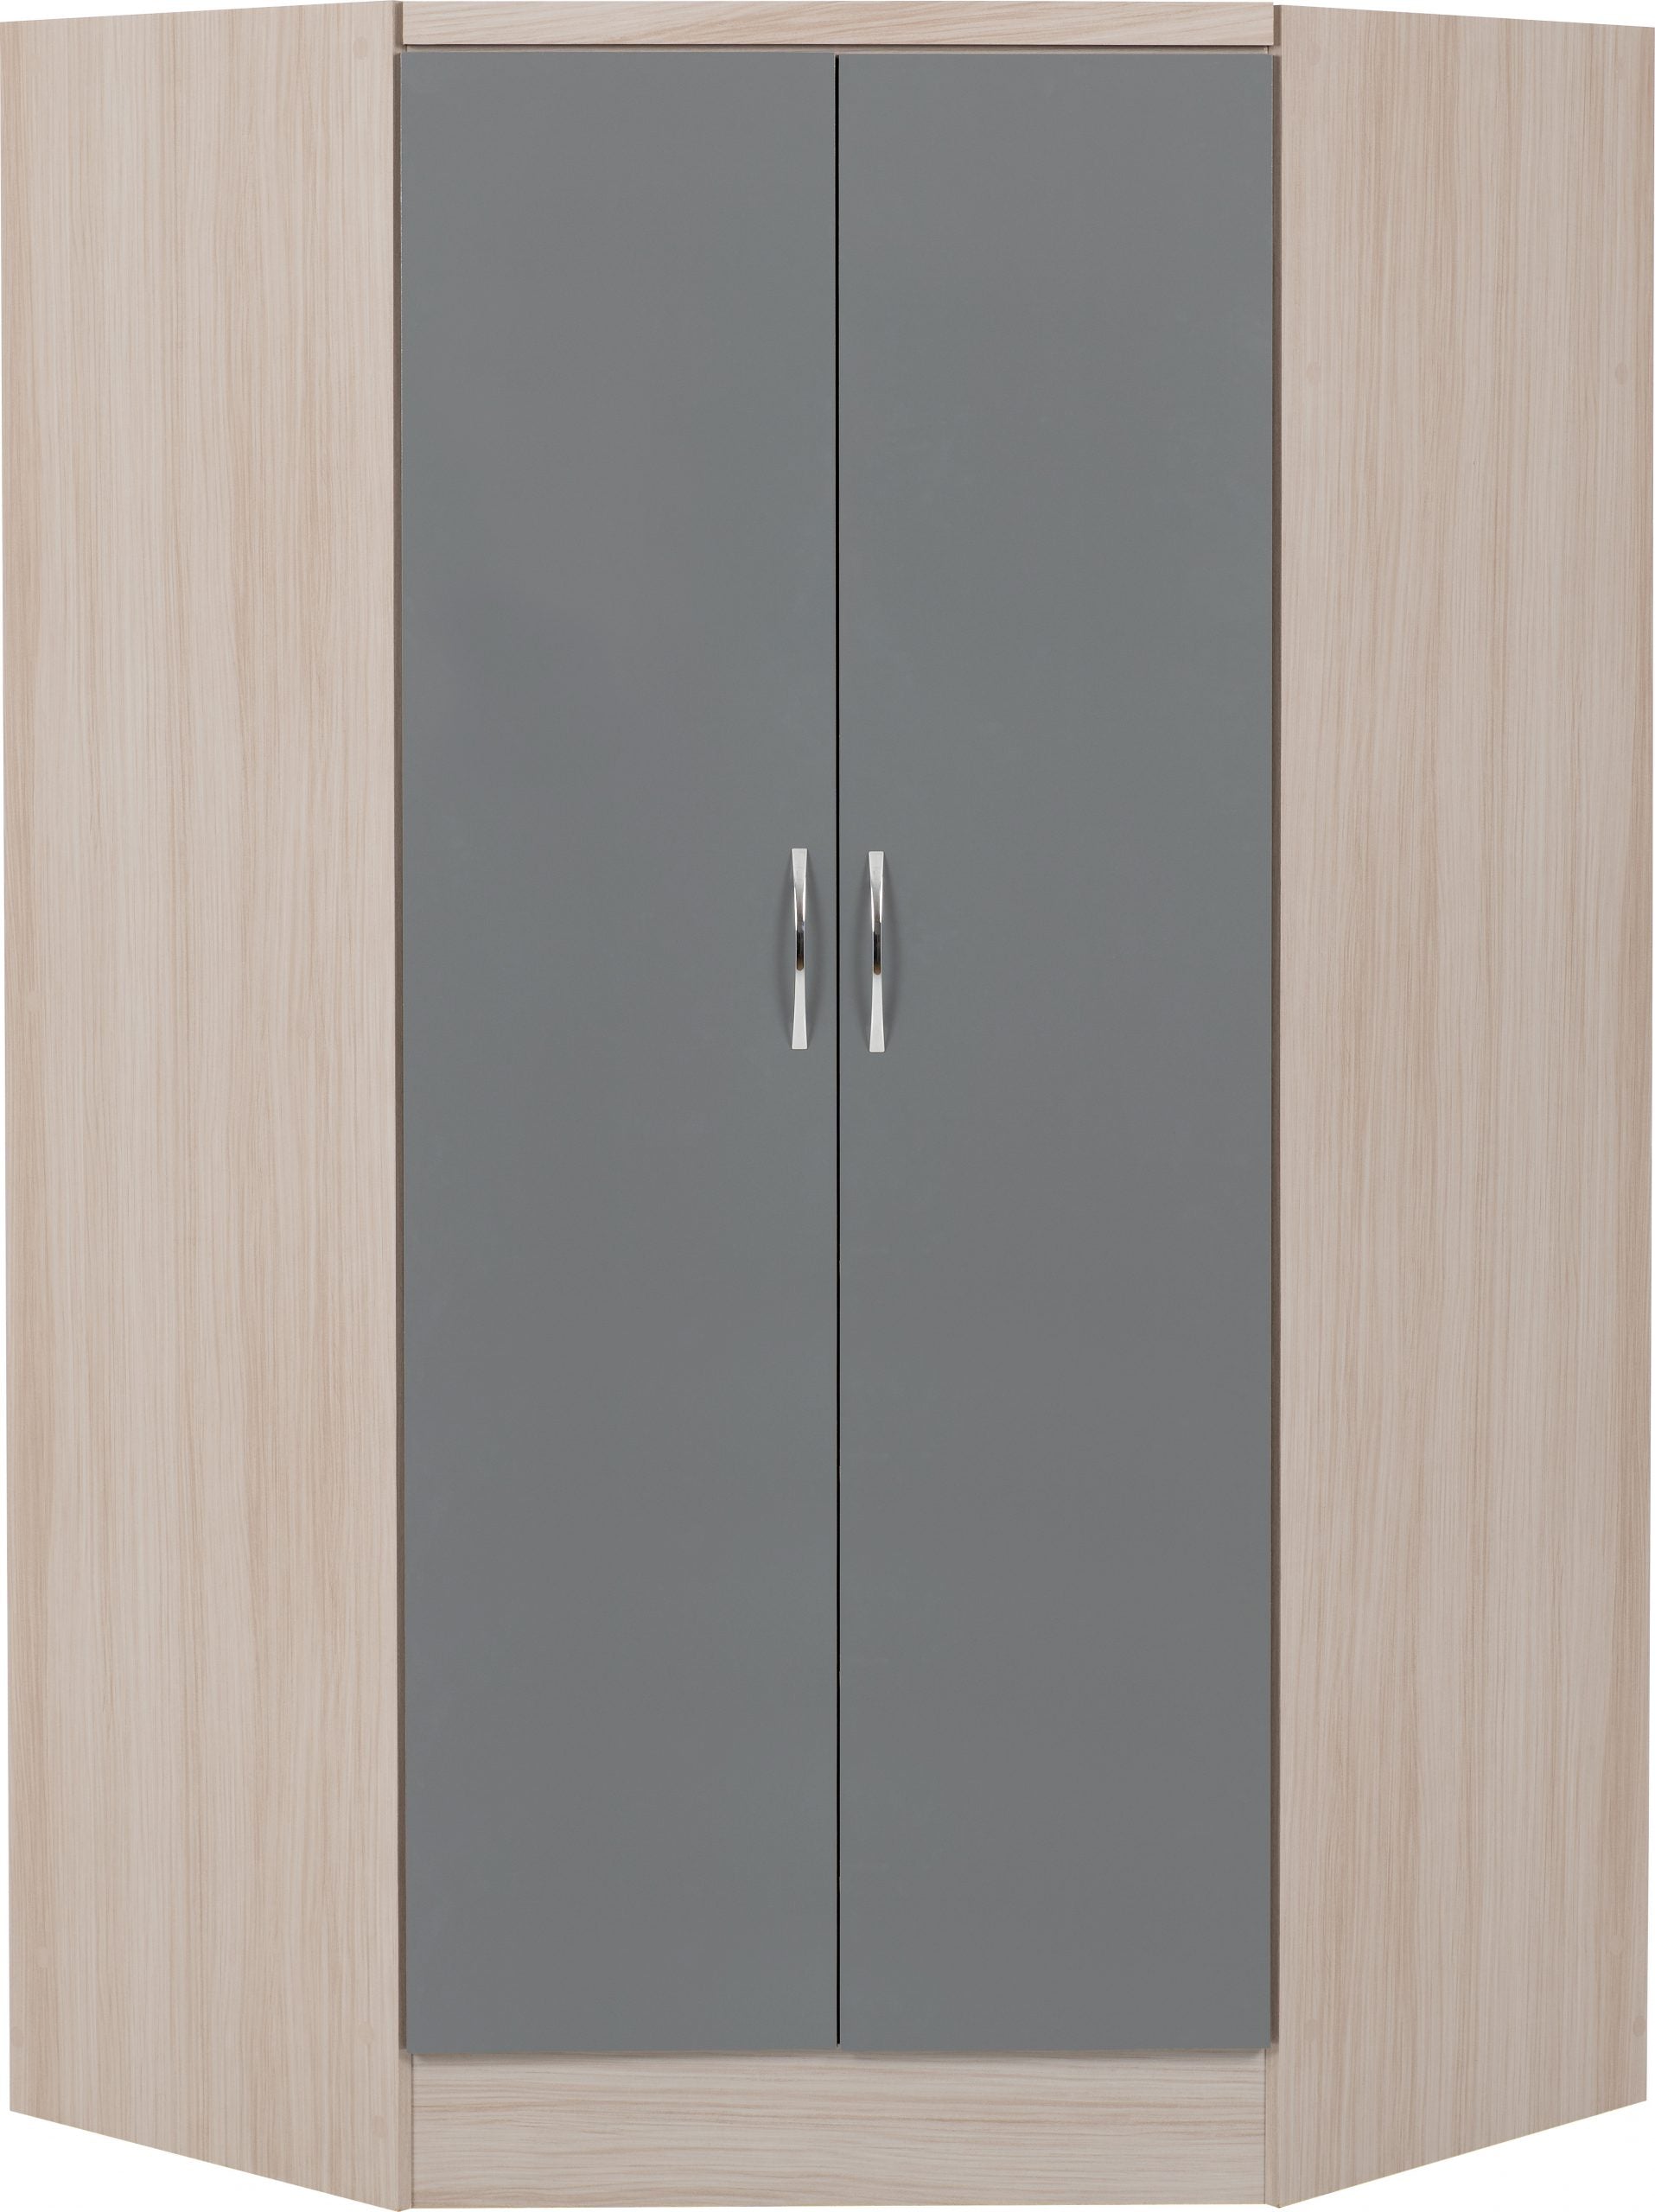 2 Door Corner Wardrobe Grey Gloss/Light Oak Effect Veneer